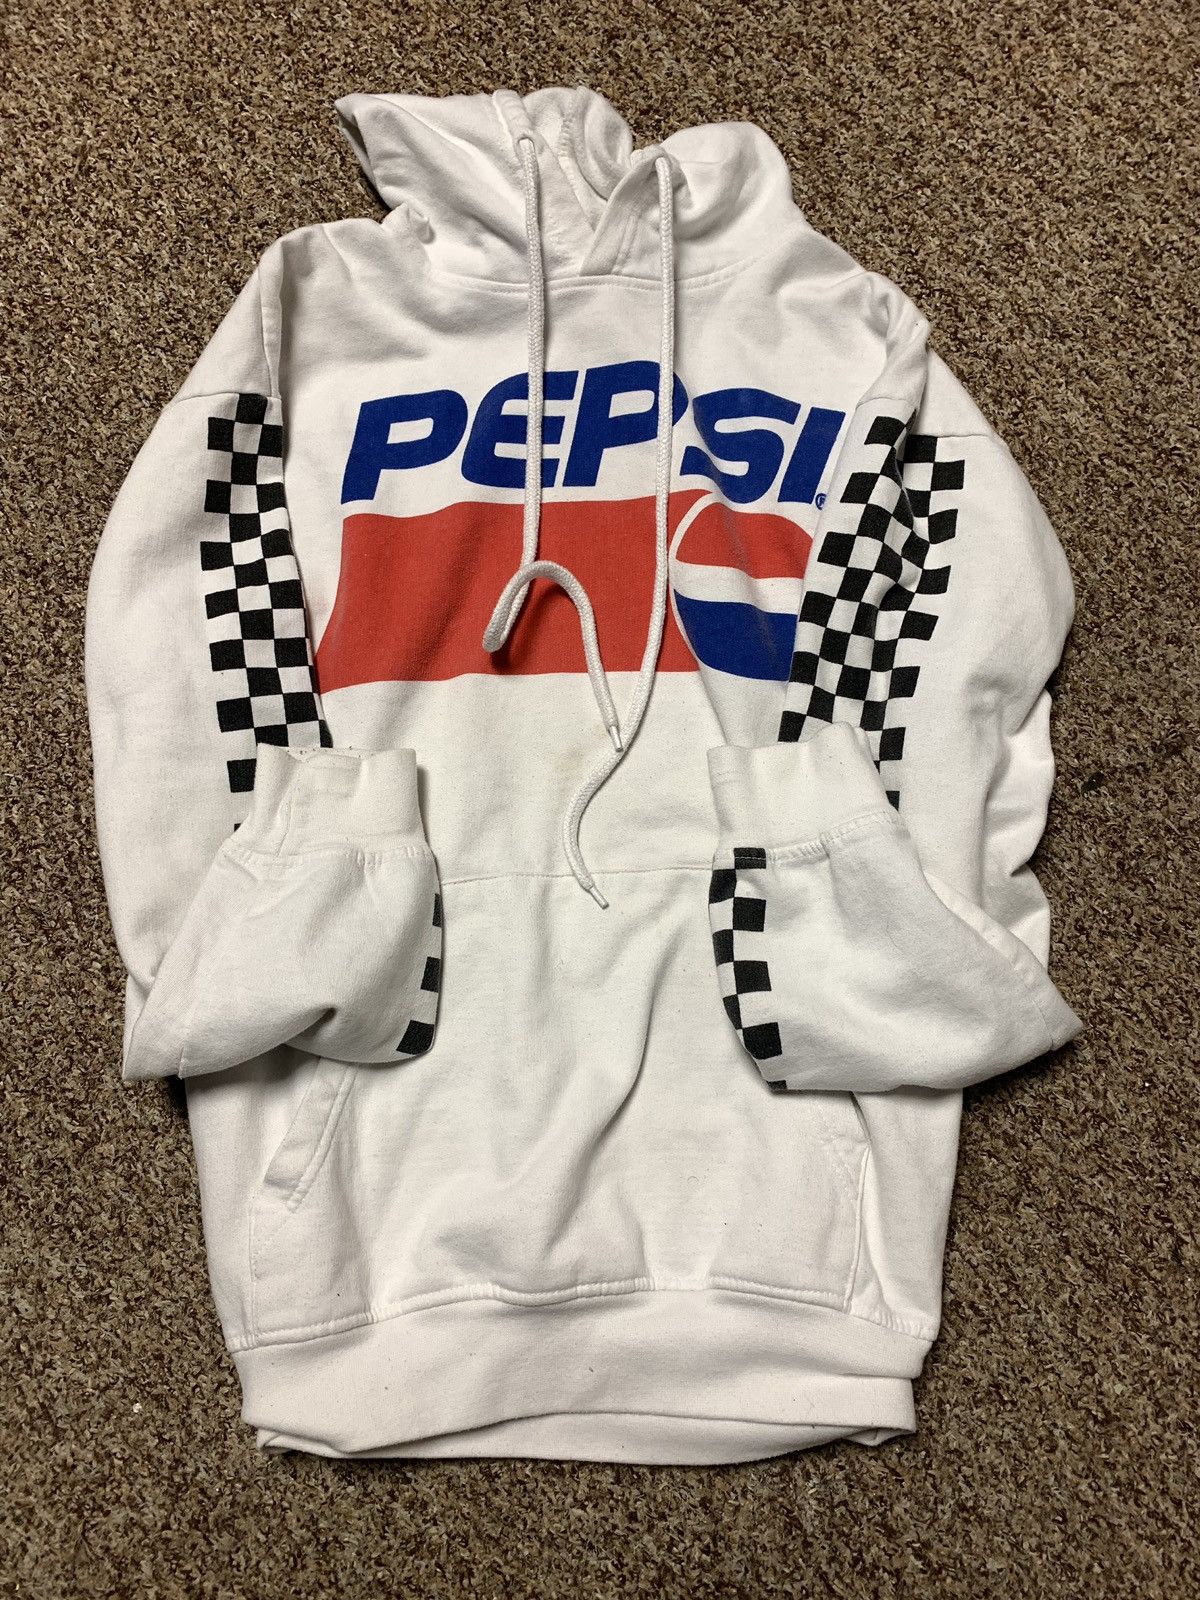 Pepsi Vintage 90s Pepsi promo hoodie white Size US L / EU 52-54 / 3 - 1 Preview